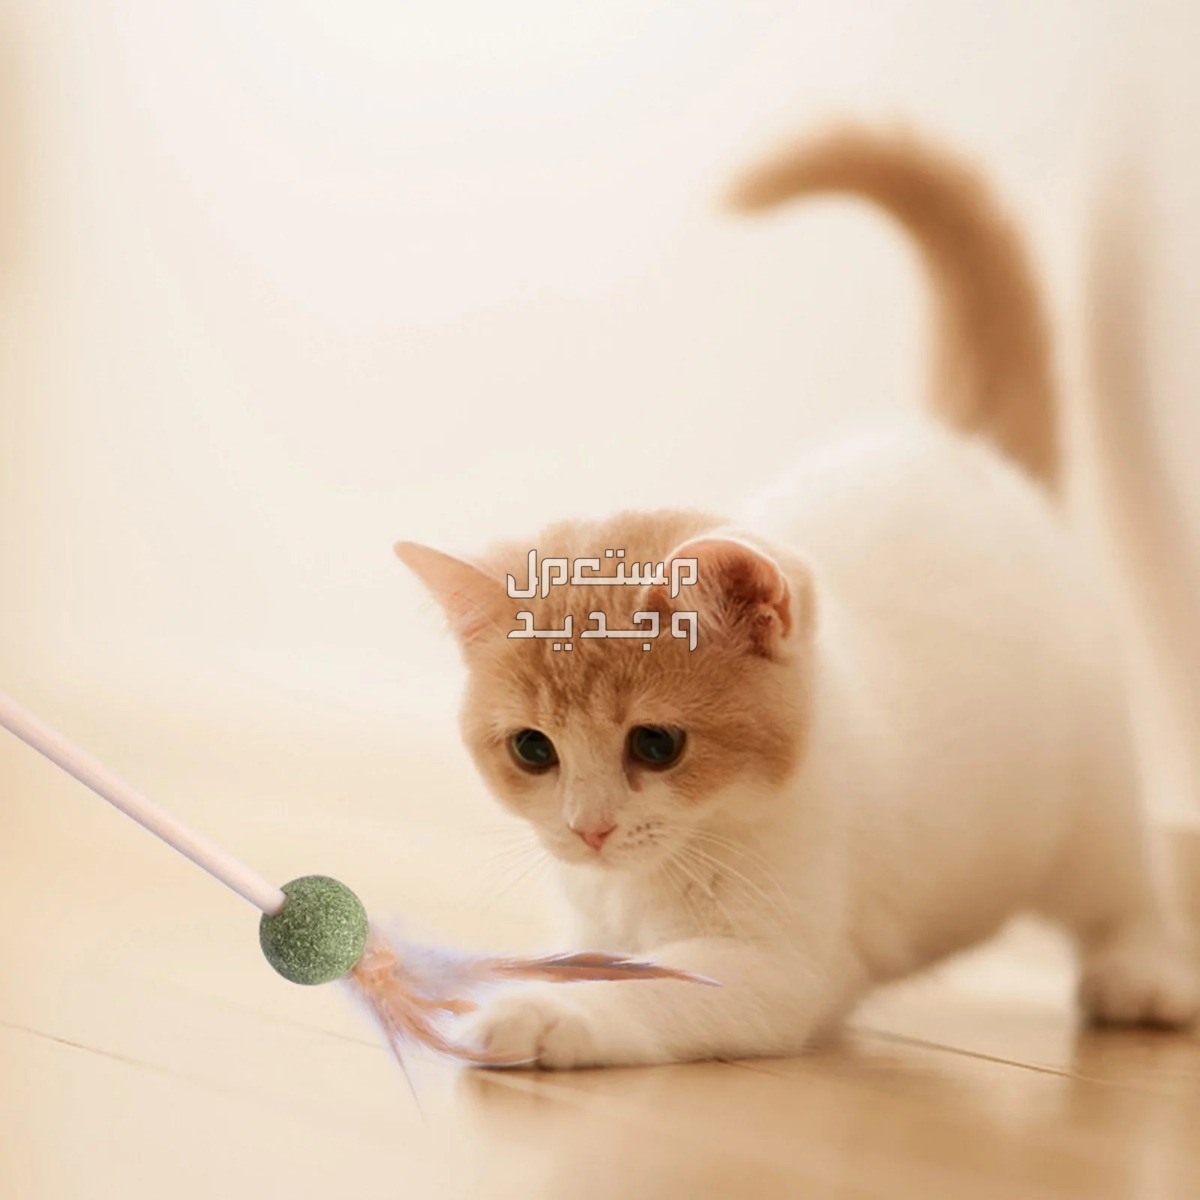 لمحبي القطط - تعرف على أفضل العاب قطط متحركة في السودان قطة تلعب بالريشة